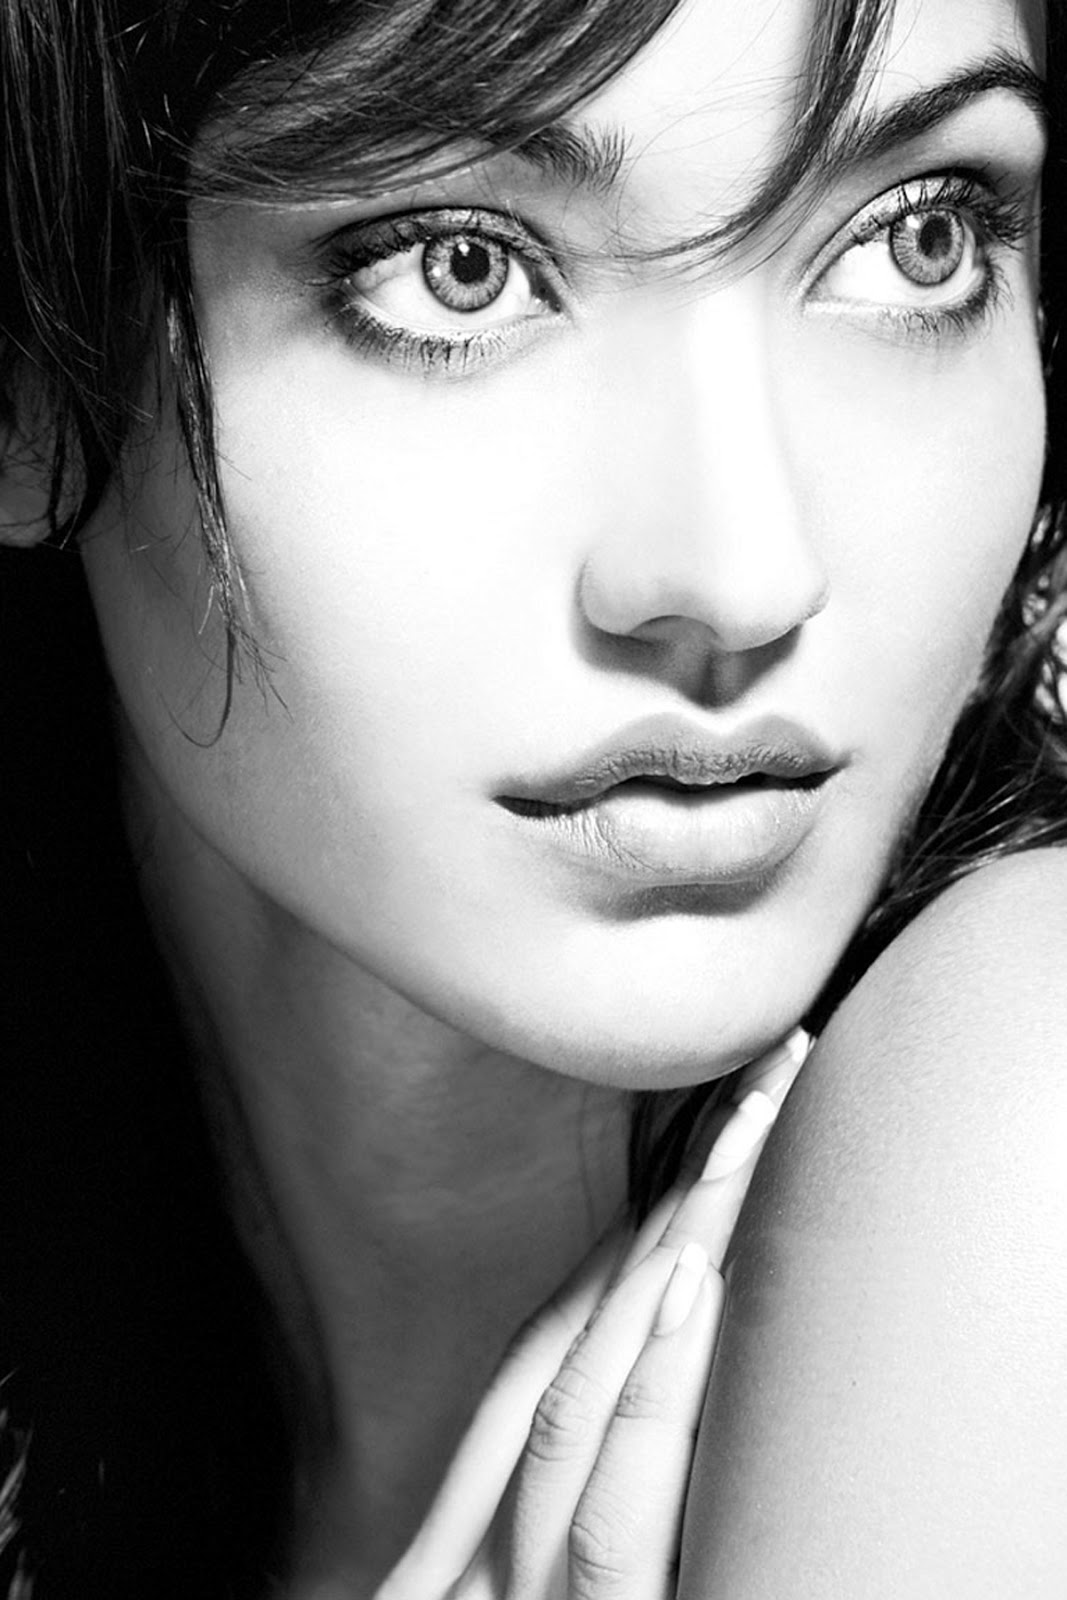 bollywood actriz fondos de pantalla hd para móvil,cara,cabello,ceja,labio,belleza